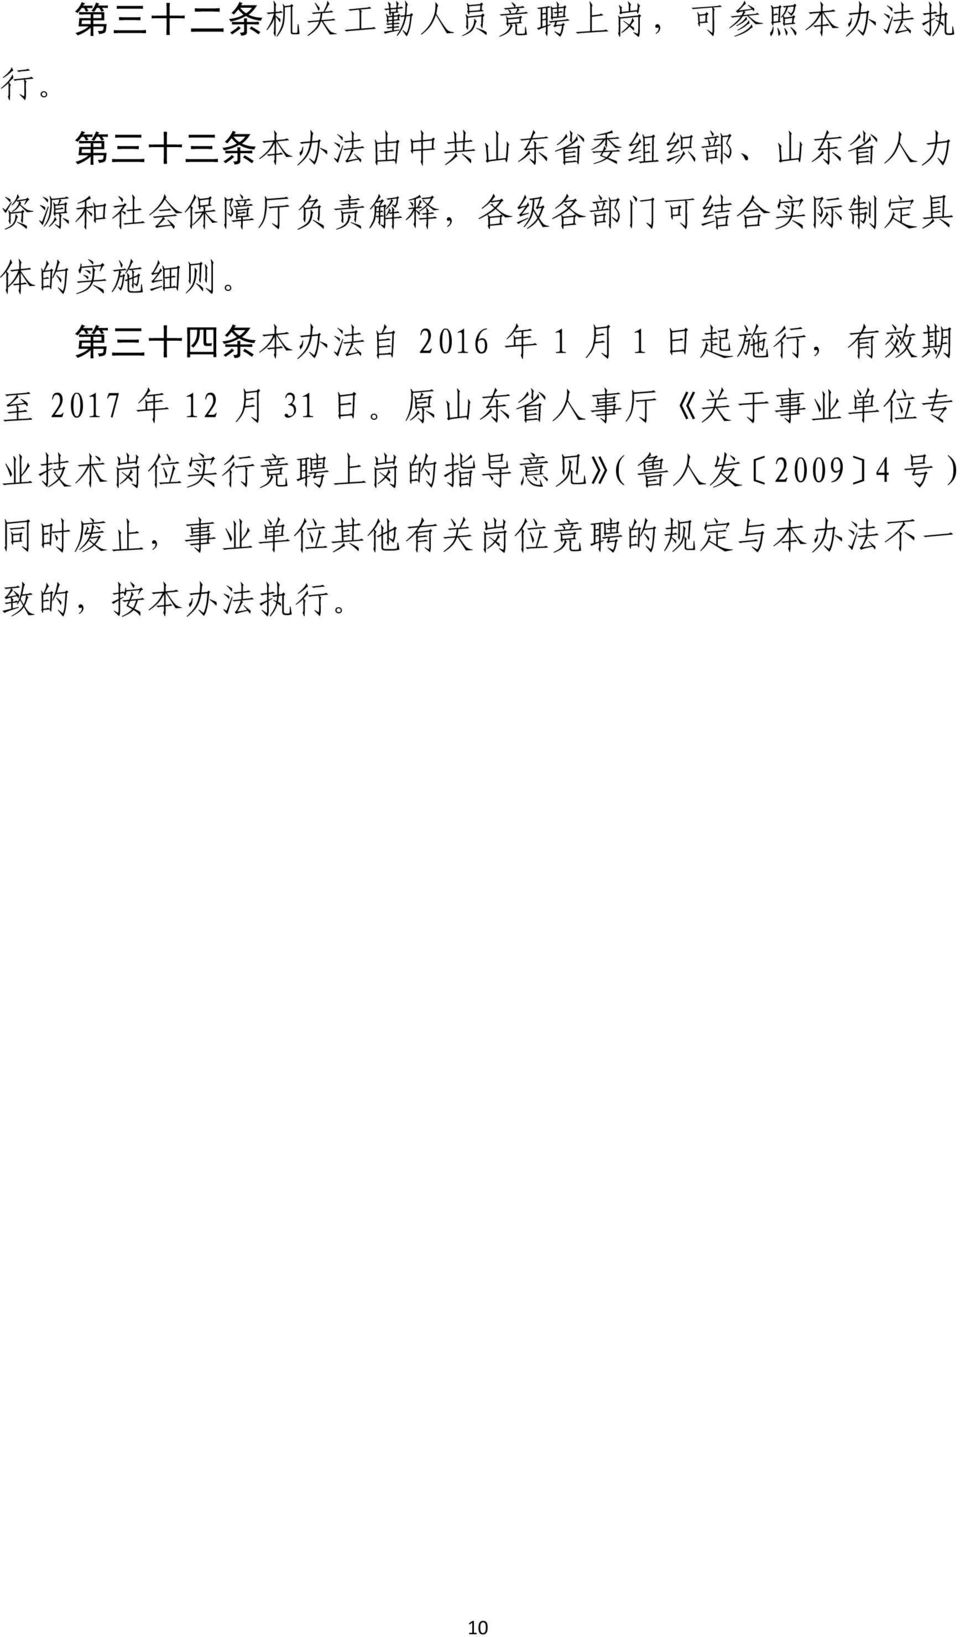 1 日 起 施 行, 有 效 期 至 2017 年 12 月 31 日 原 山 东 省 人 事 厅 关 于 事 业 单 位 专 业 技 术 岗 位 实 行 竞 聘 上 岗 的 指 导